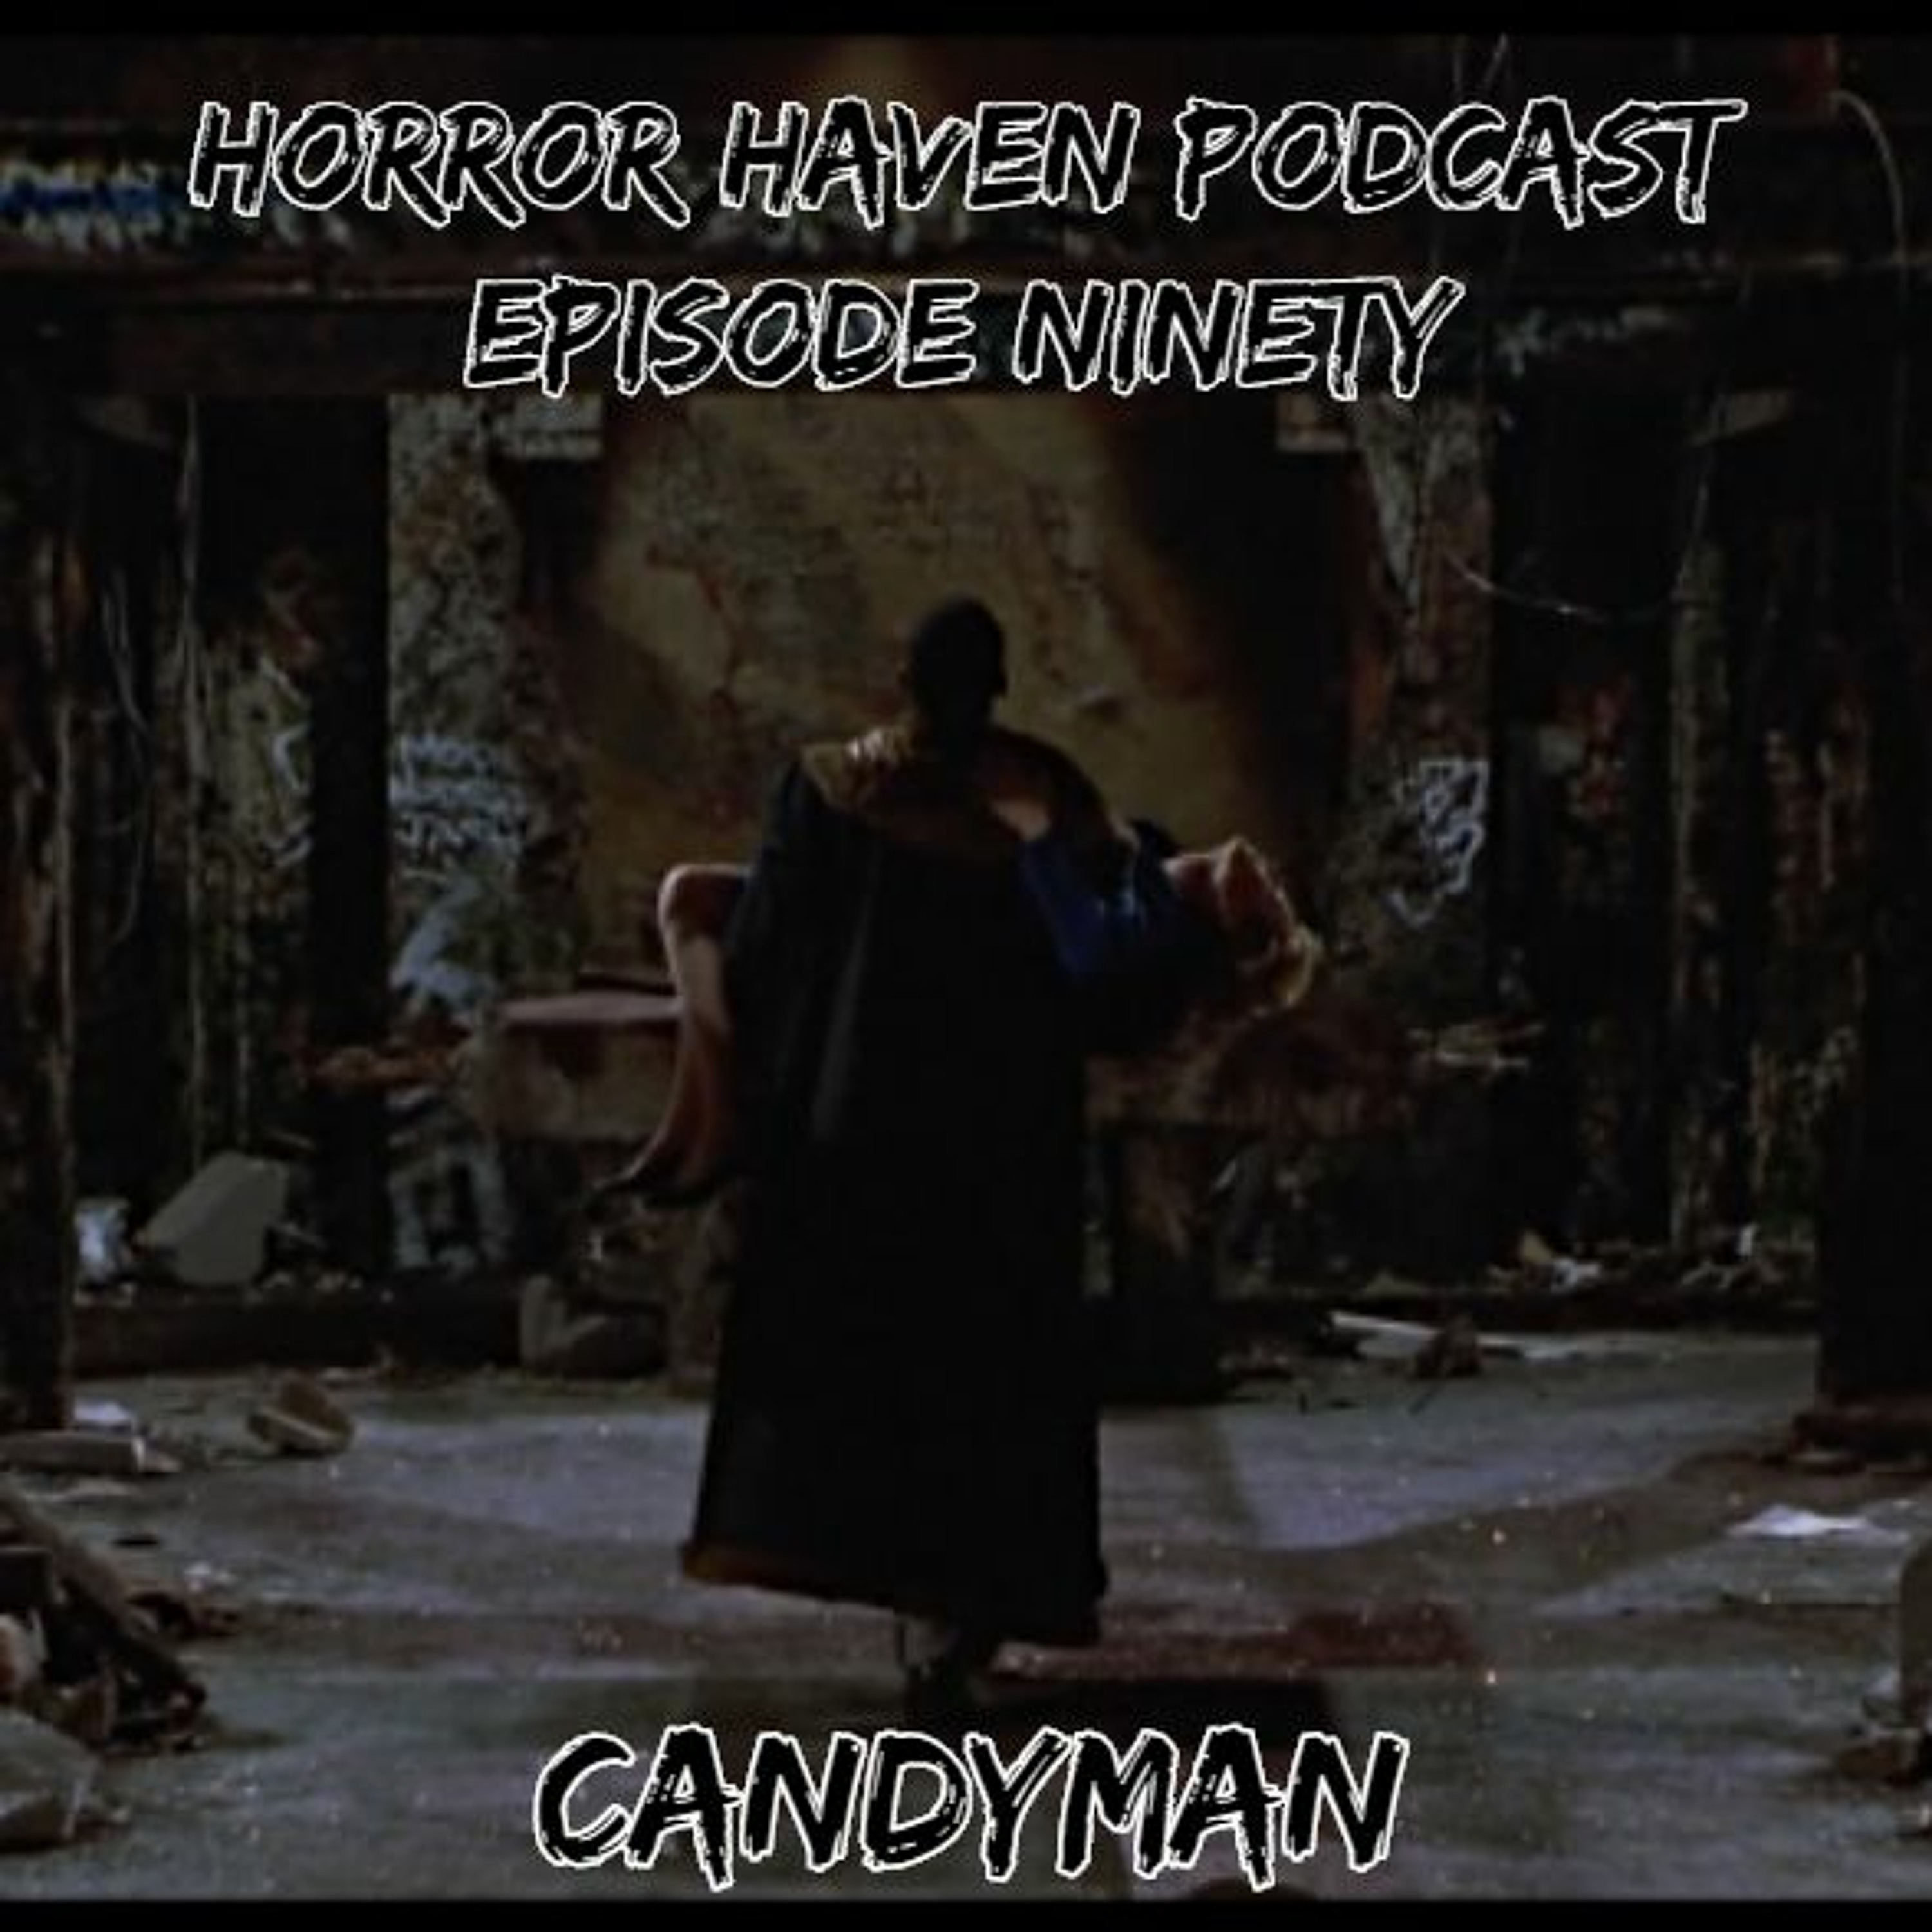 Episode Ninety:  Candyman